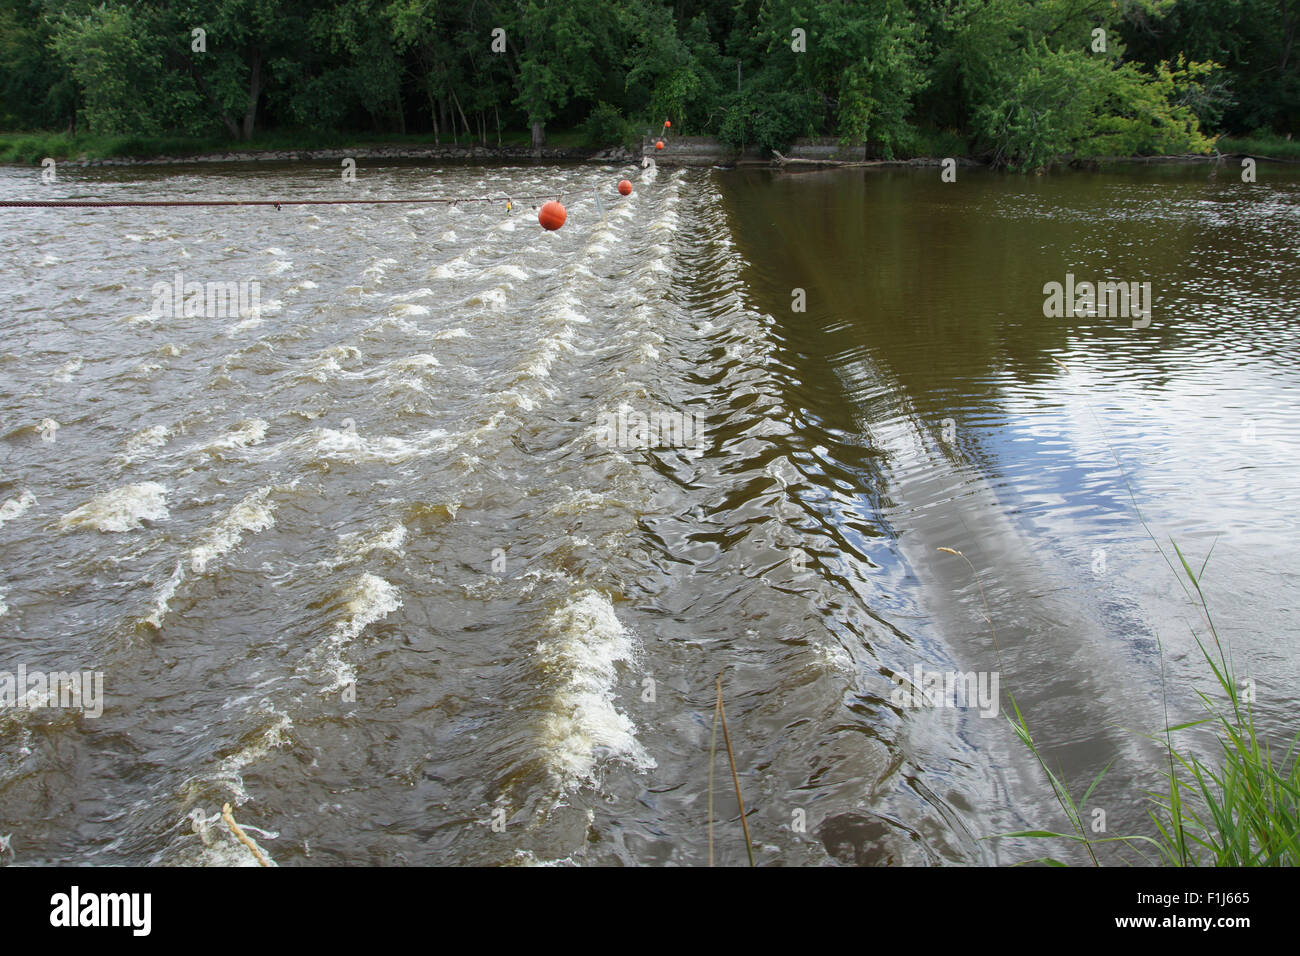 Les faibles niveaux d'eau et le rouleau des vagues sur la rivière Fox au barrage de tête basse à Princeton. Banque D'Images